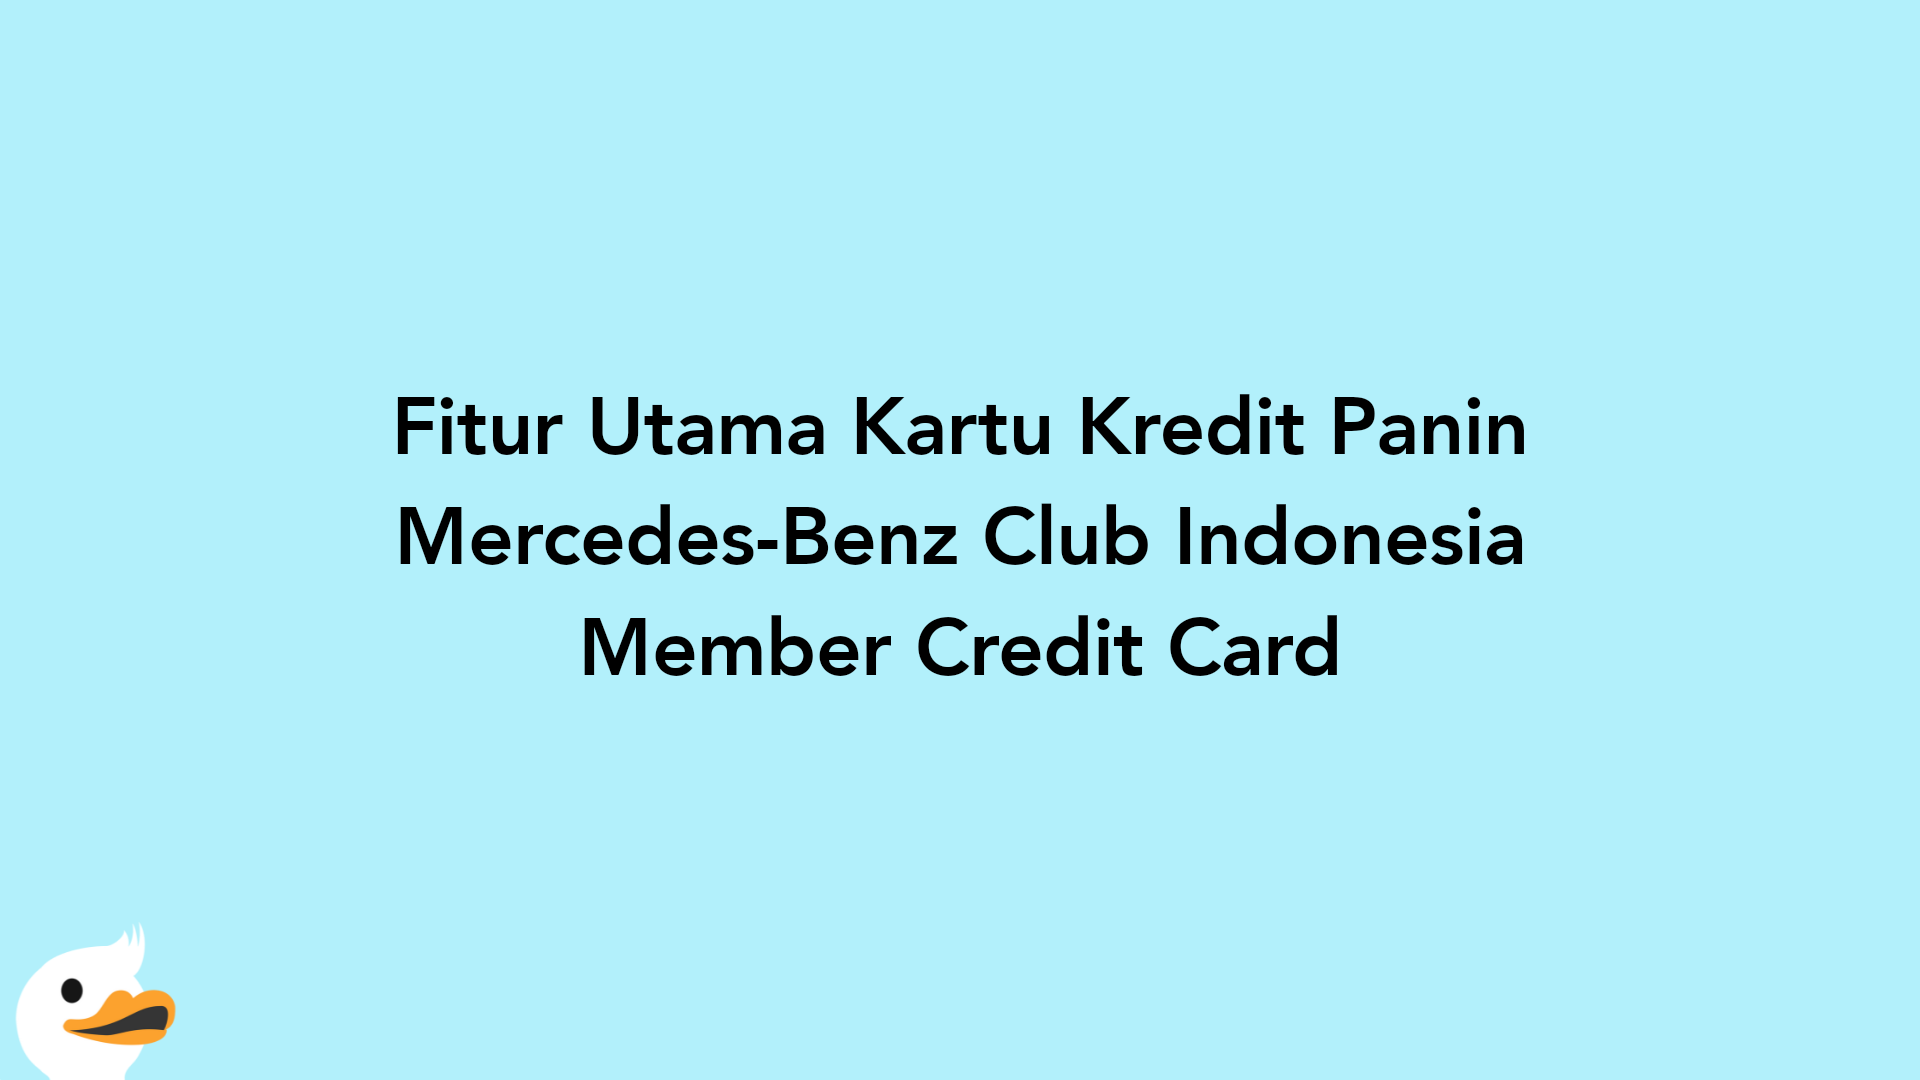 Fitur Utama Kartu Kredit Panin Mercedes-Benz Club Indonesia Member Credit Card